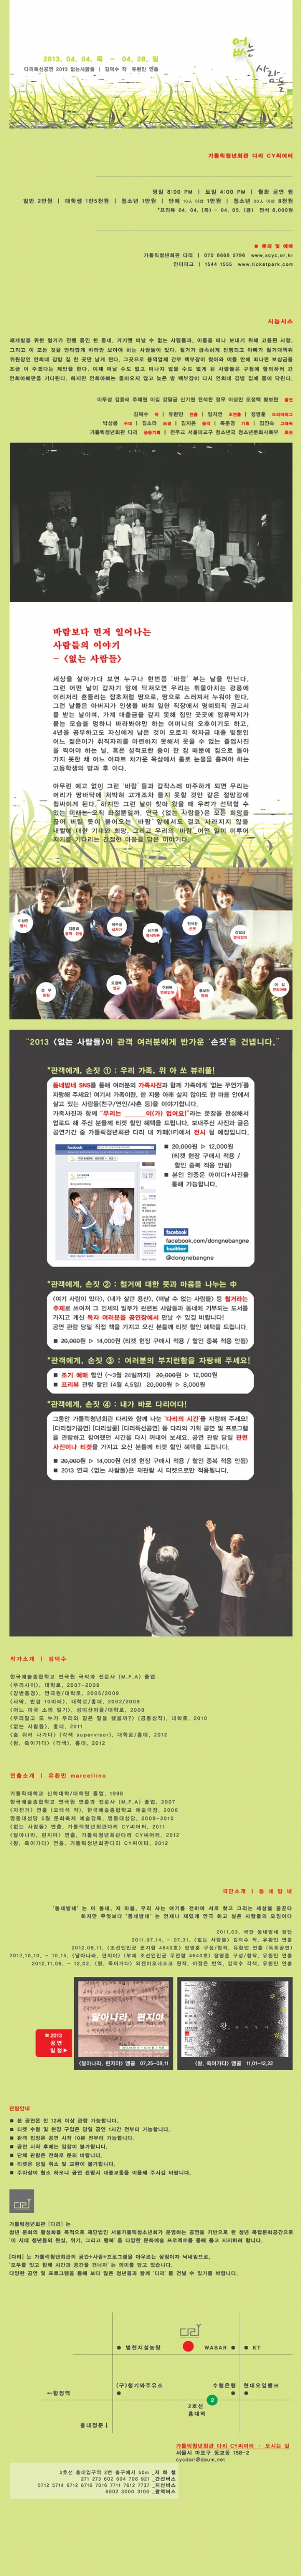 2013 연극 [없는 사람들]_극단 동네방네_web(3).jpg